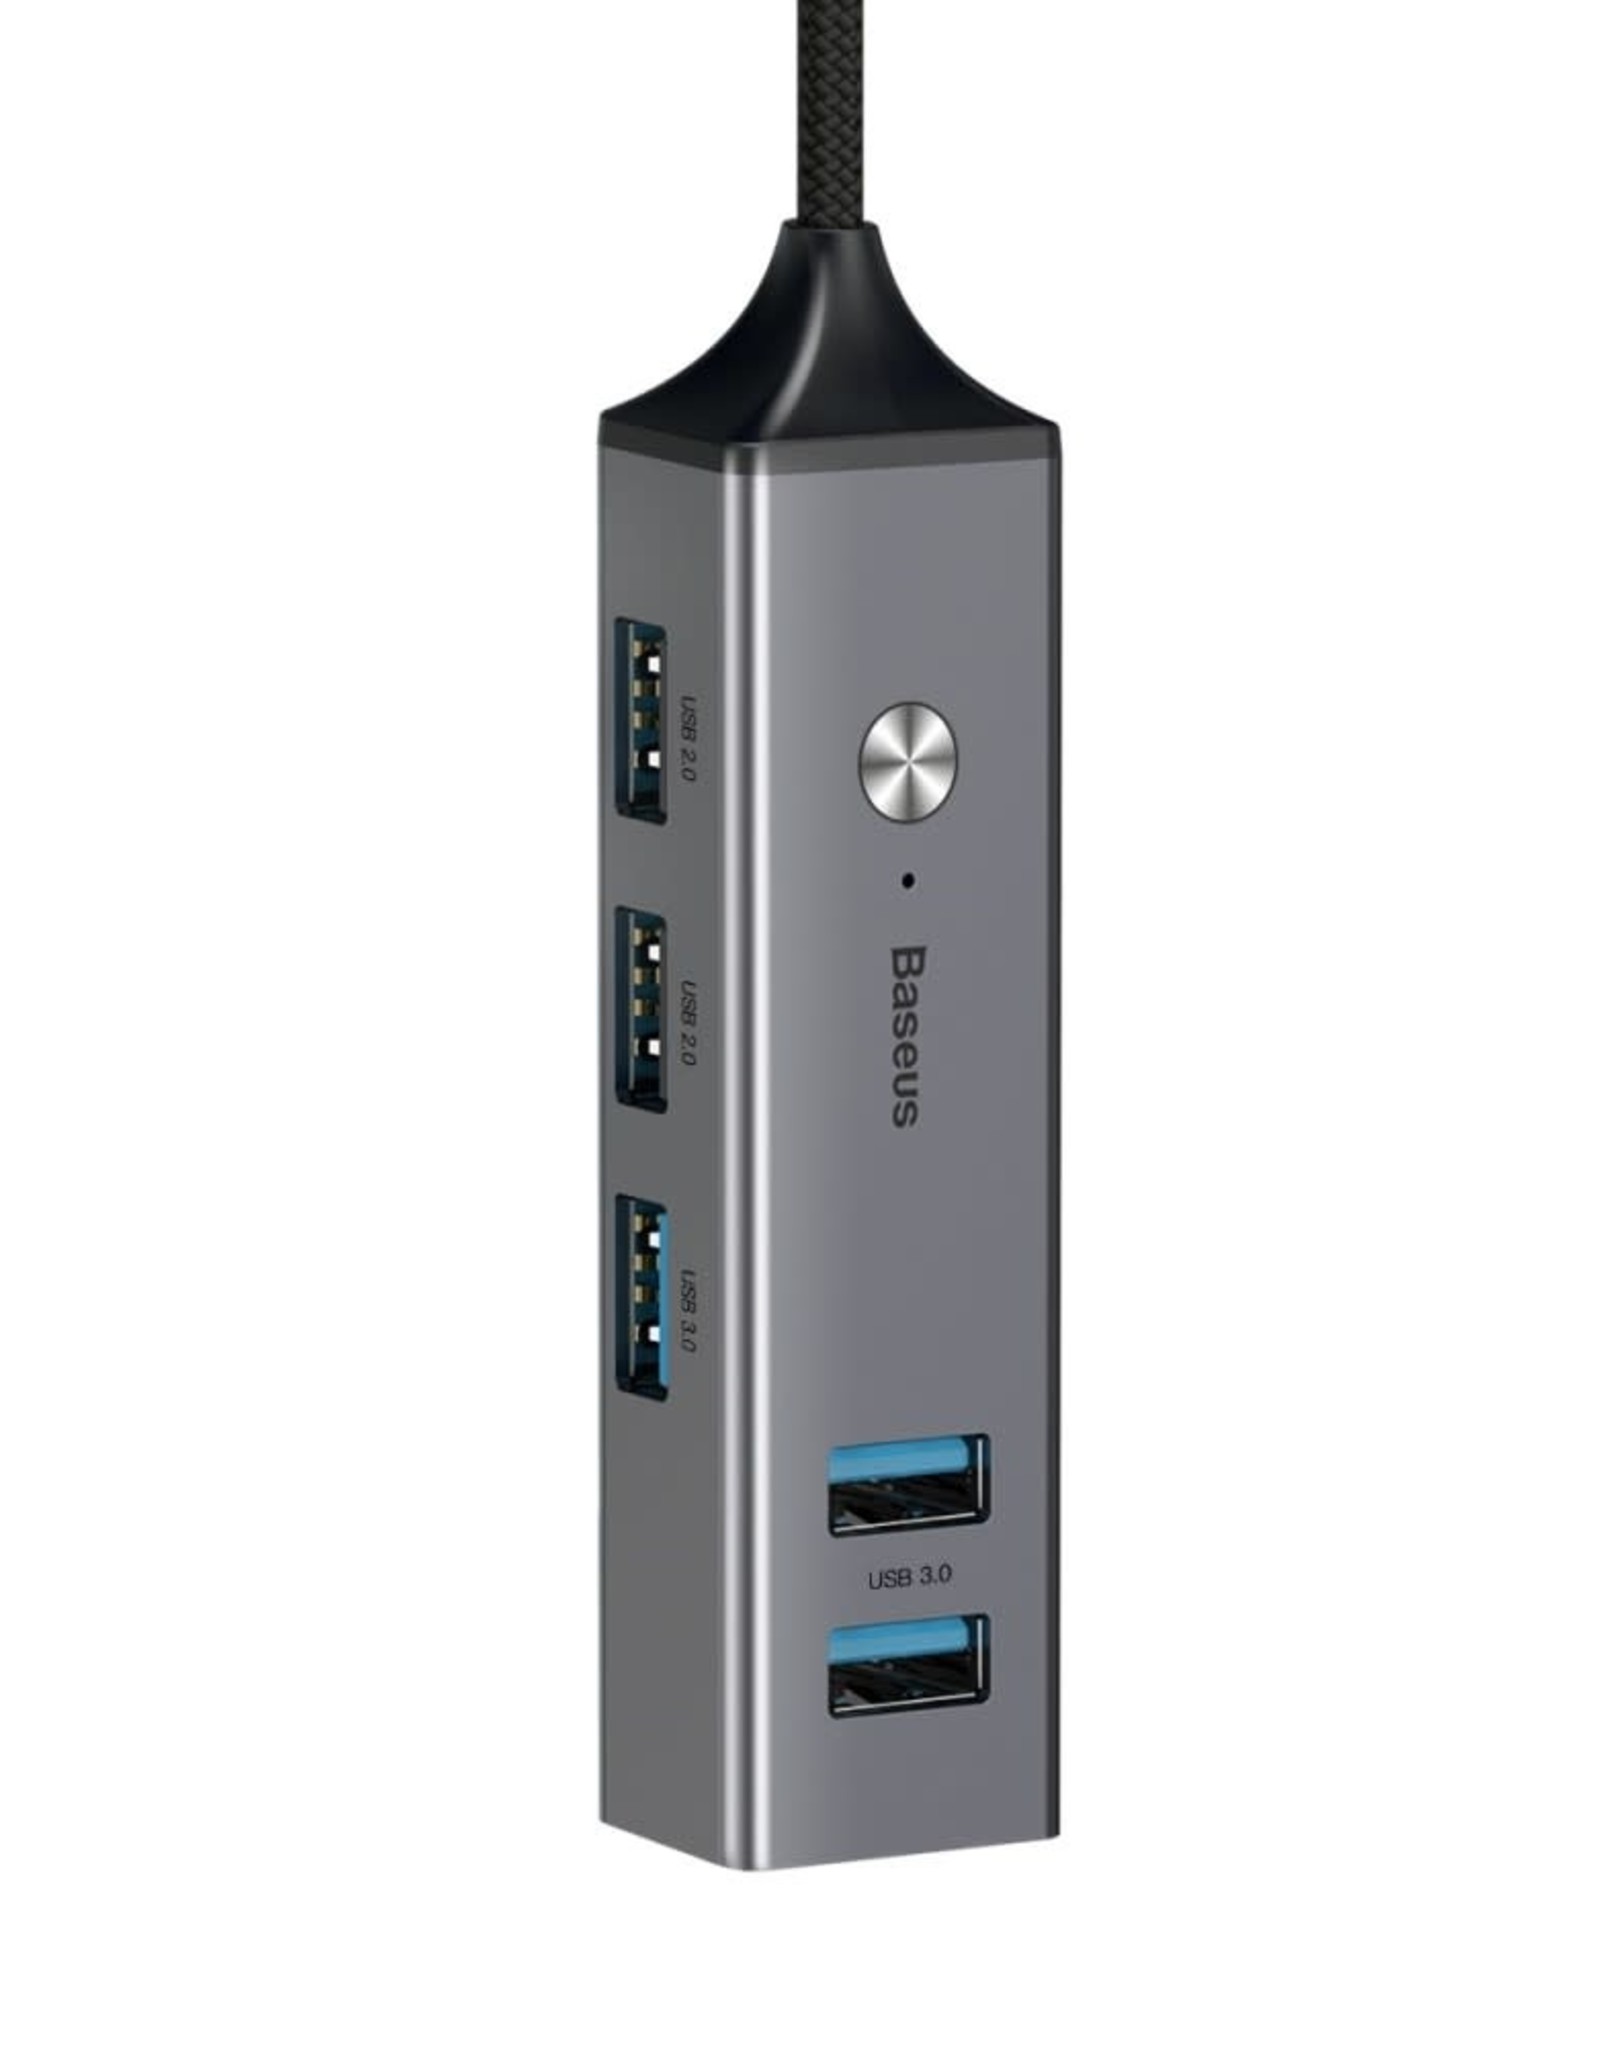 Baseus BASEUS 5 USB Ports USB Hub Type-C to USB3.0 x 3 + USB2.0 x 2 Cube Hub Adapter Converter - Dark Grey